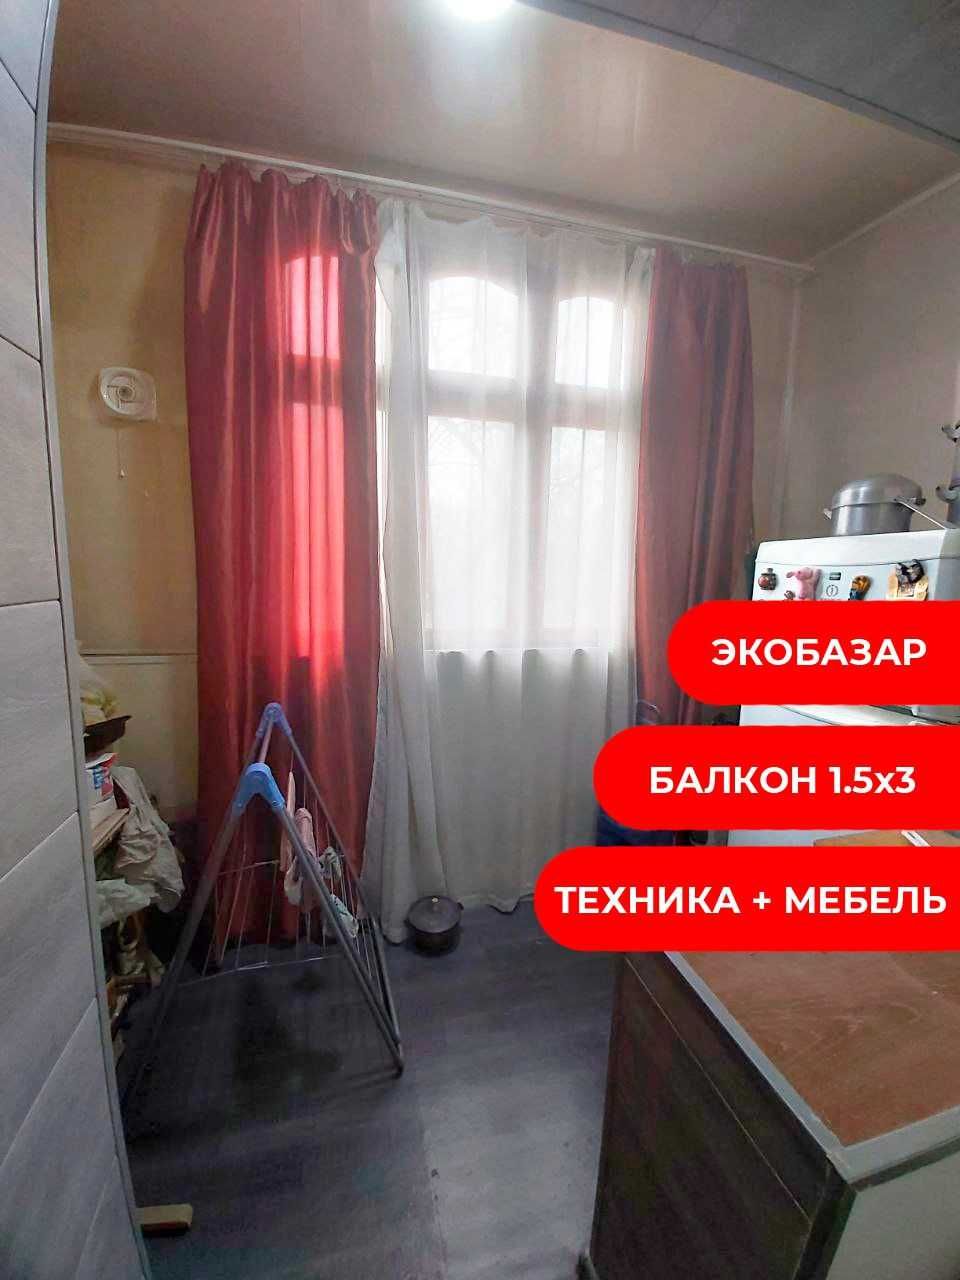 1 комнатная экобазар Чимган кирпич МЕБЕЛЬ + ТЕХНИКА 3 этаж